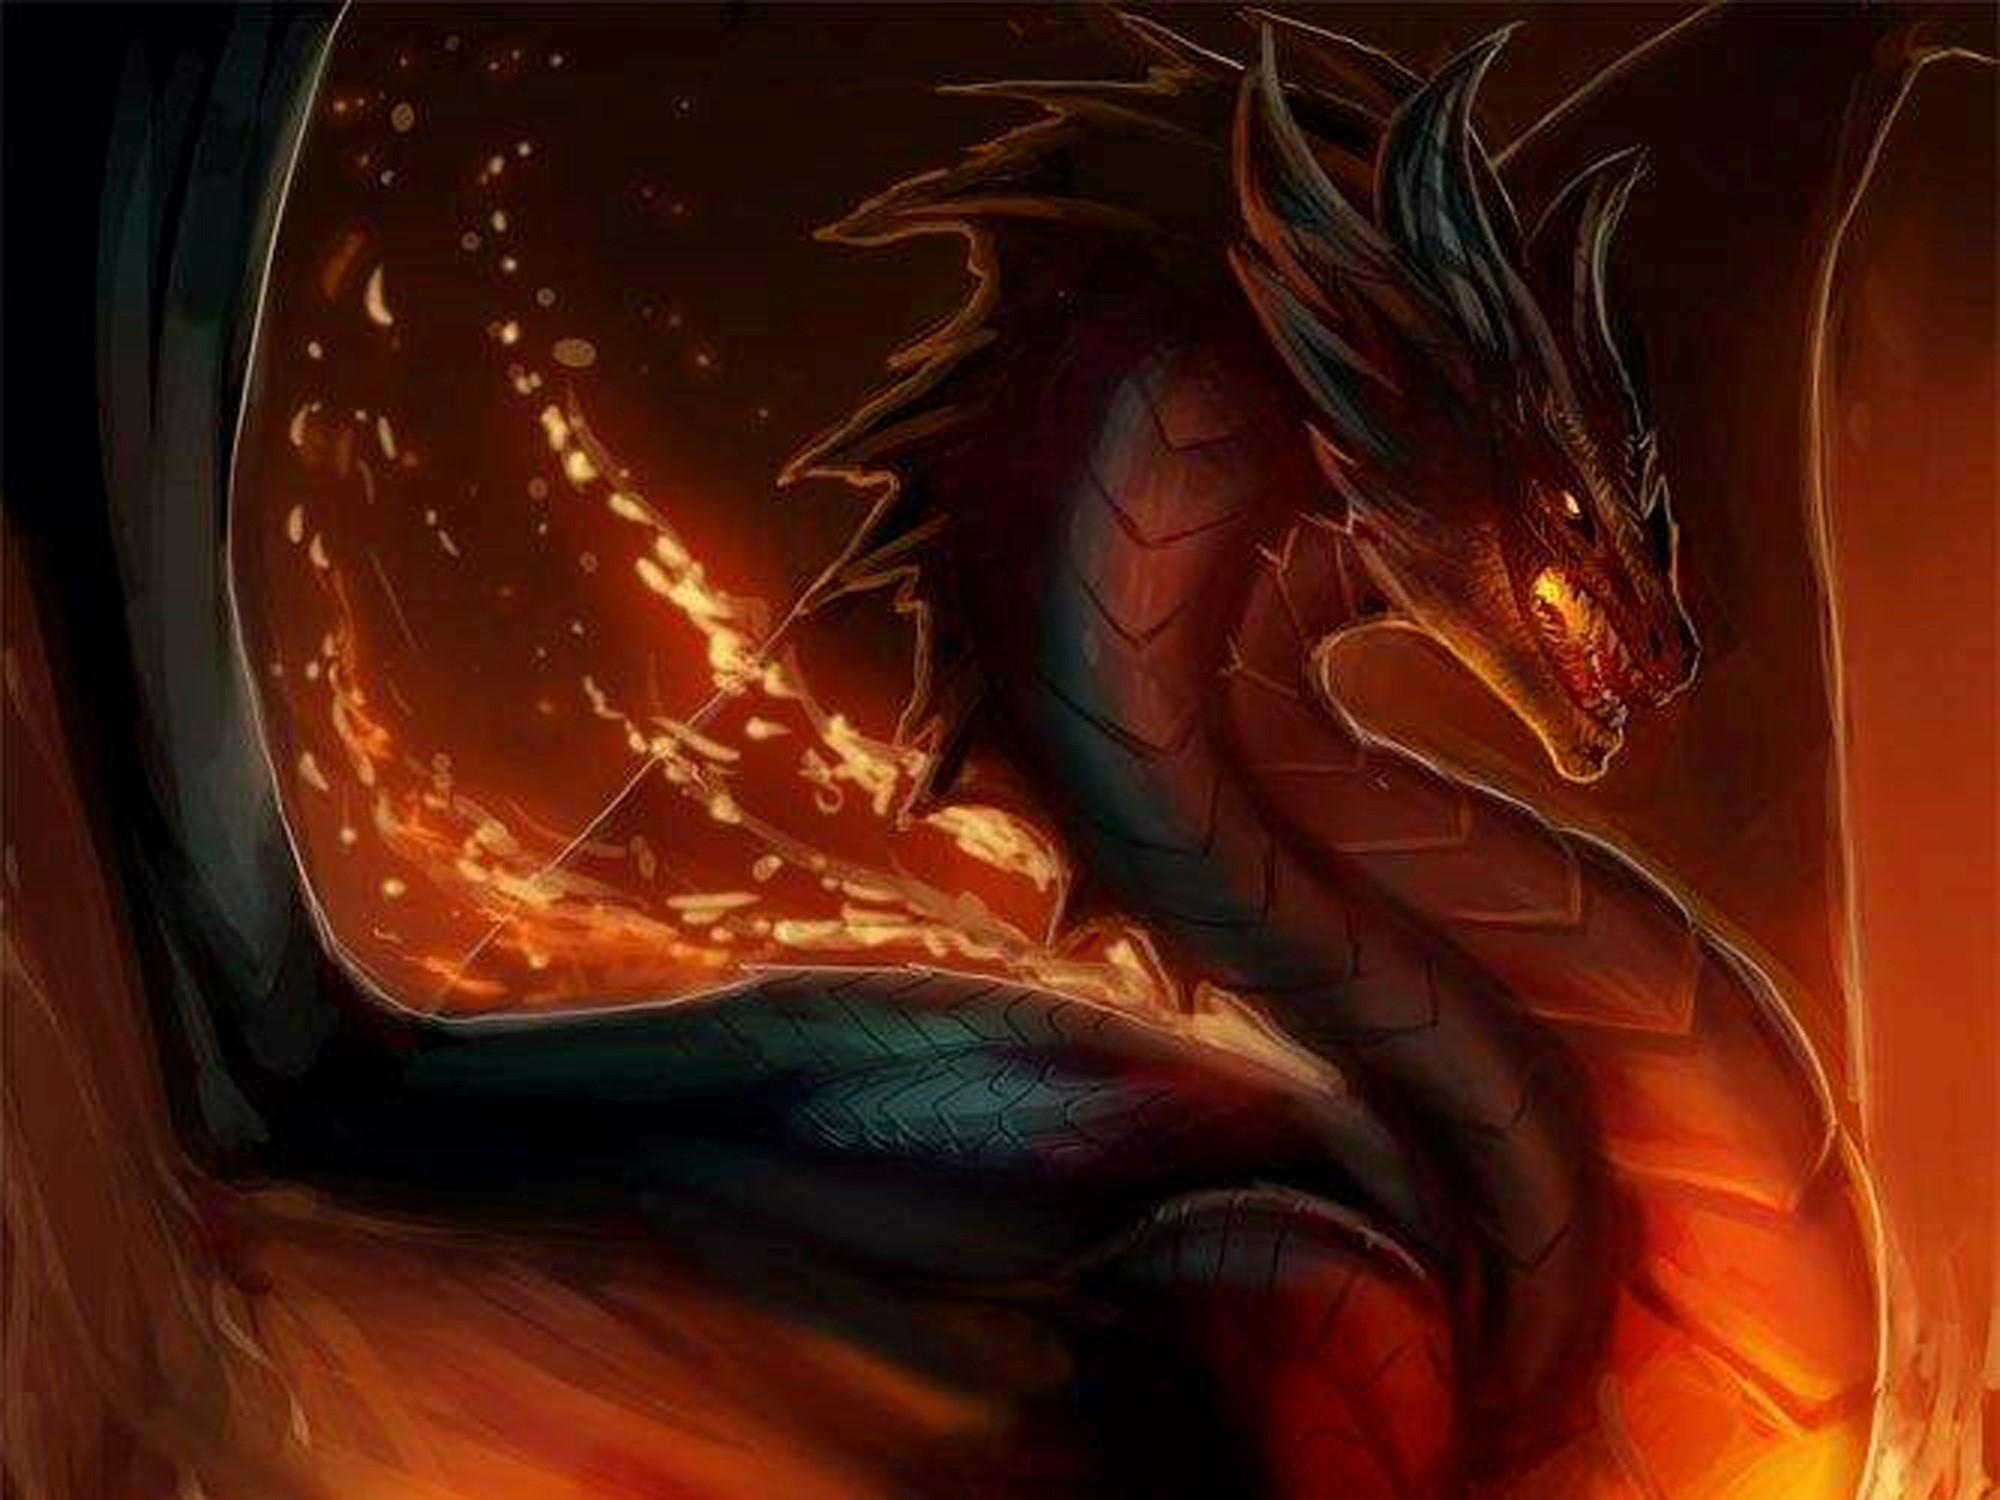 dragon live wallpaper